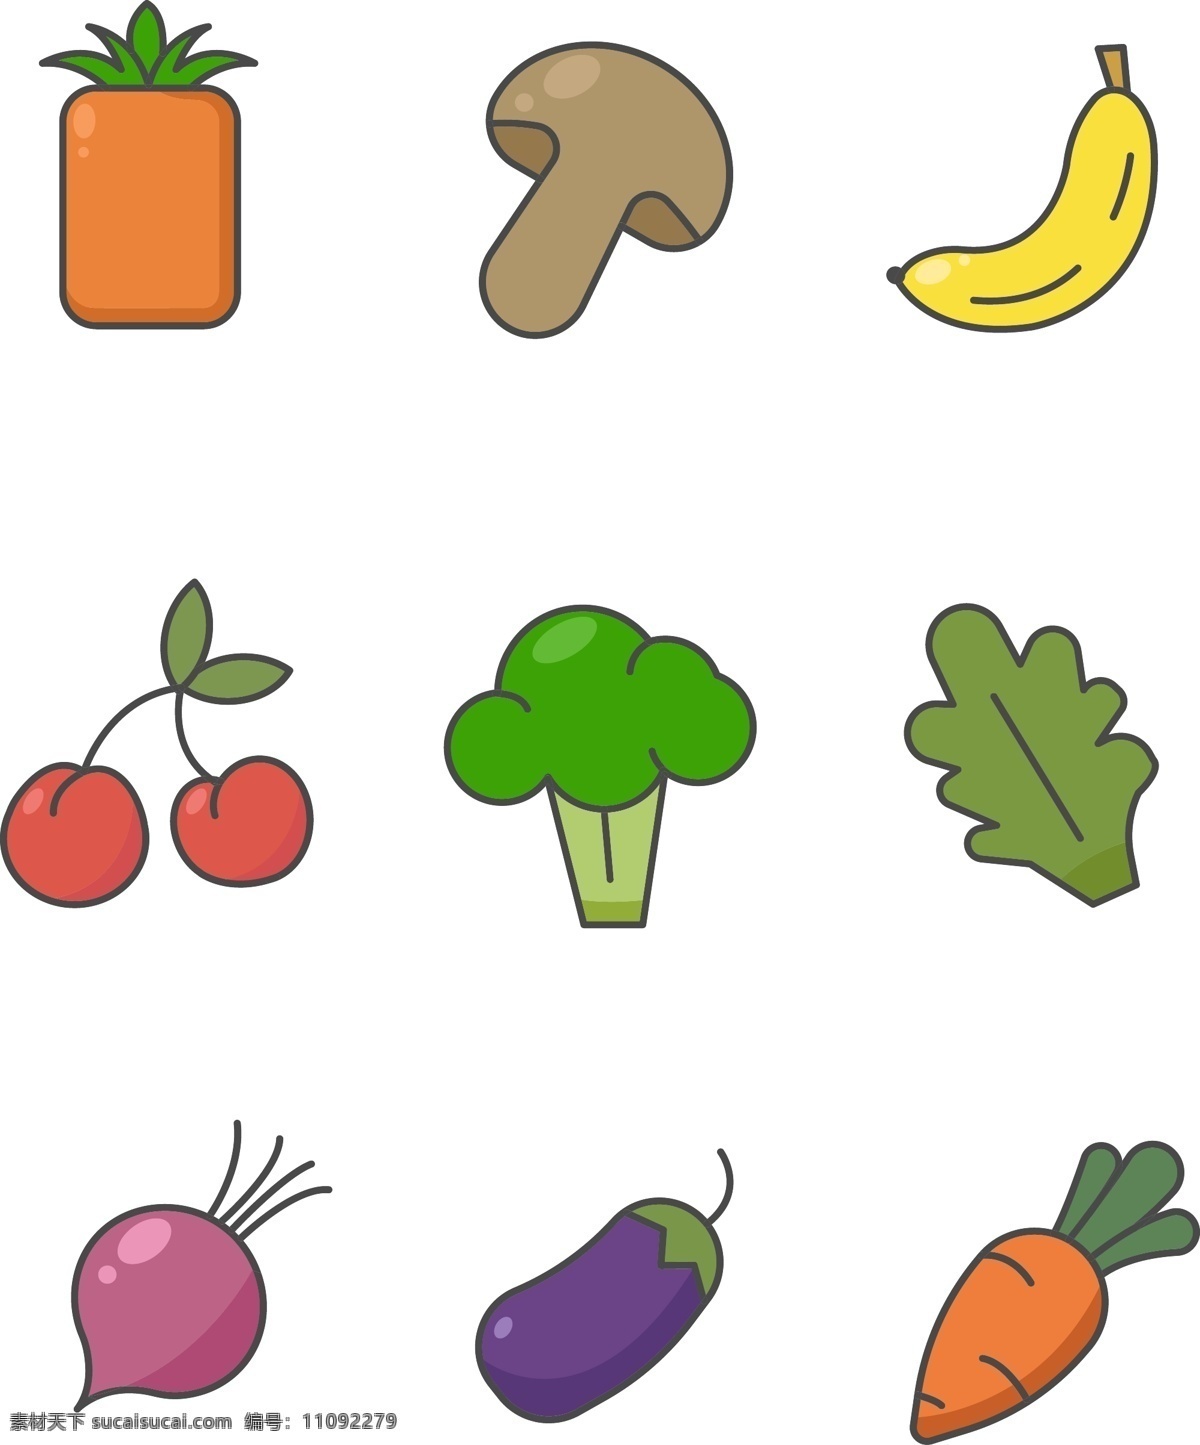 原创 商用 元素 款 手绘 蔬菜水果 图标 蔬菜 食品 紫色 红色 蘑菇 水果 纯色 食欲 樱桃 菠萝 香蕉 头菜 萝卜 茄子